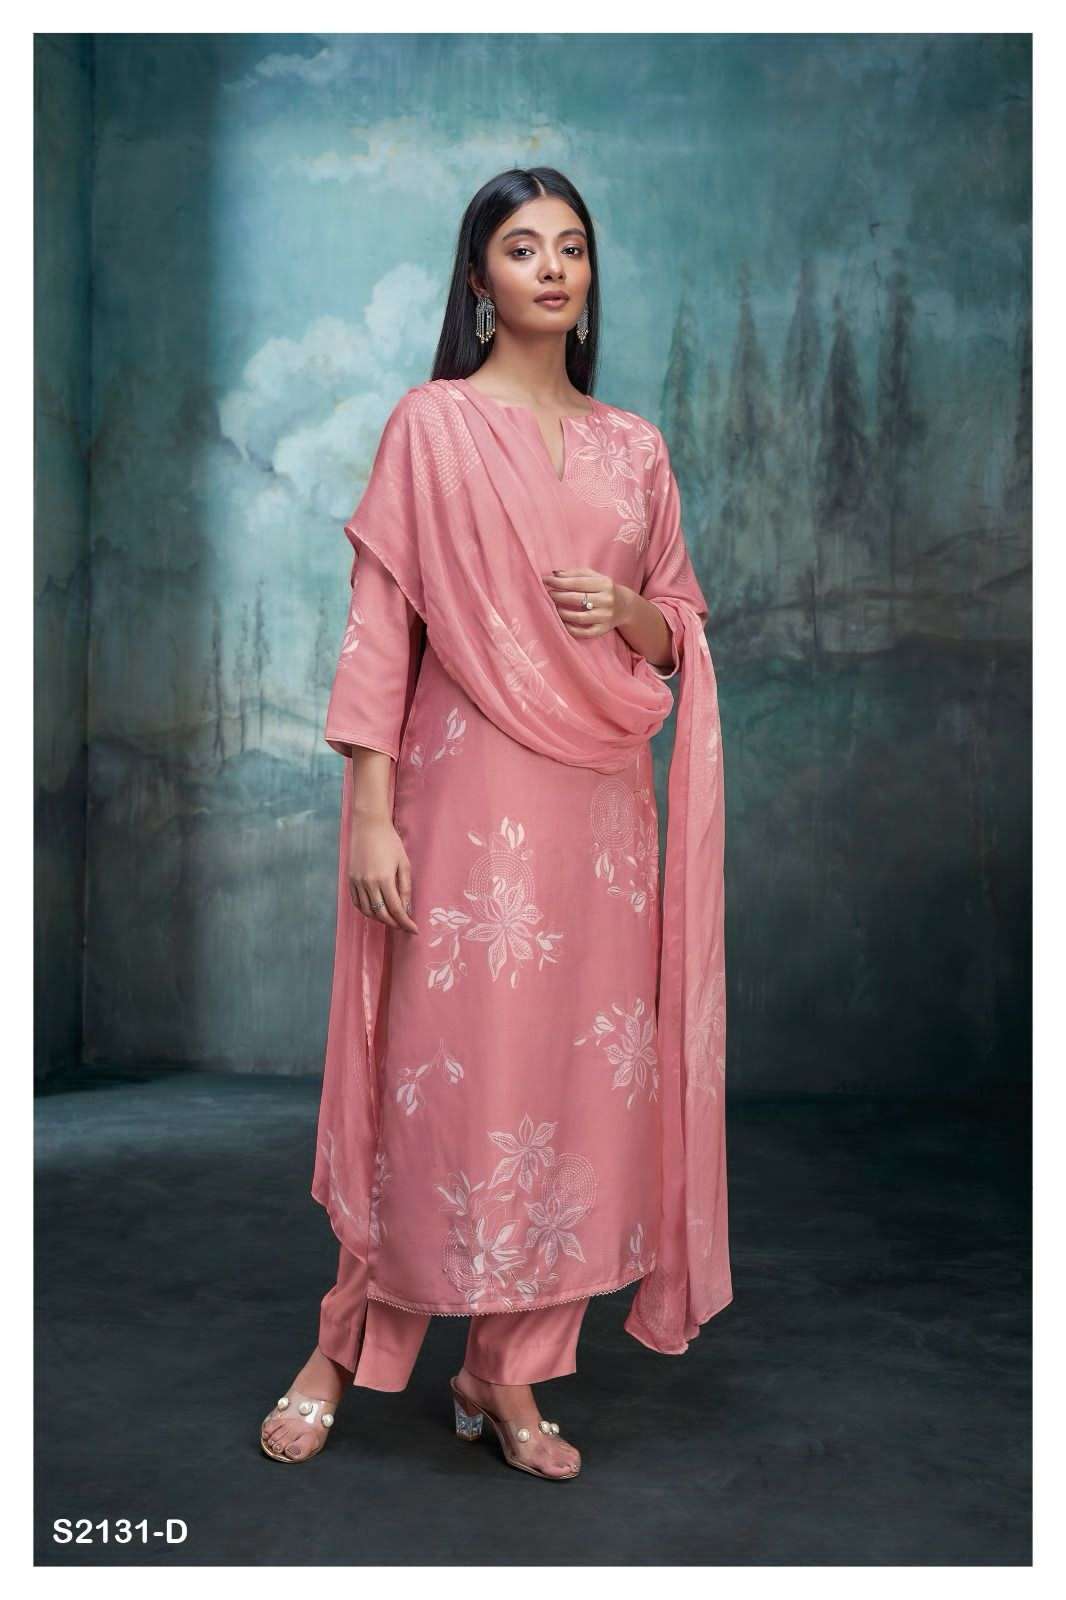 ganga rafqa 2131 colour series designer pakistani pashmina salwar kameez wholesaler surat gujarat